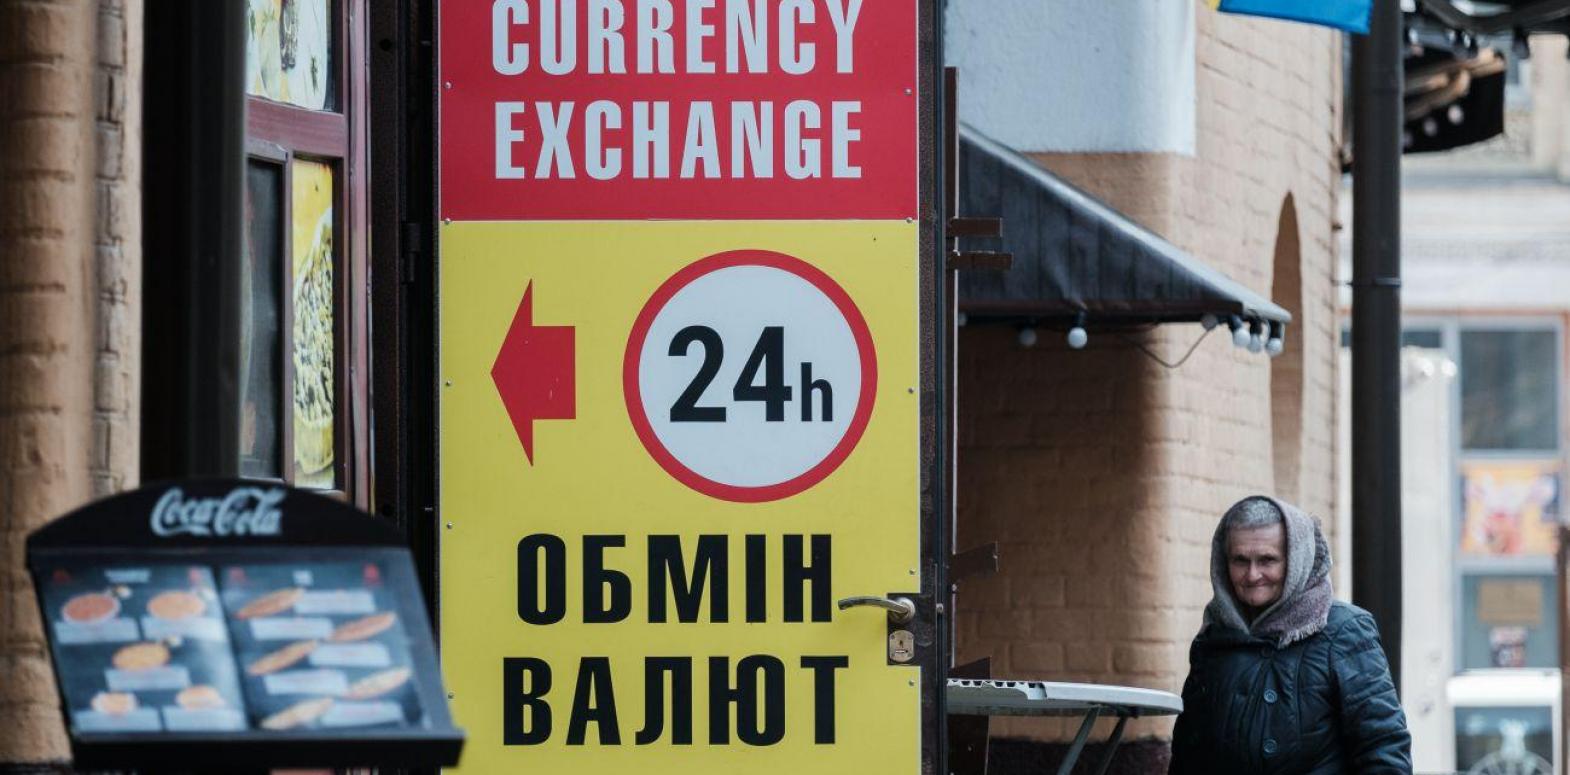 Доллар снова дороже 40 гривен: свежие курсы в обменниках